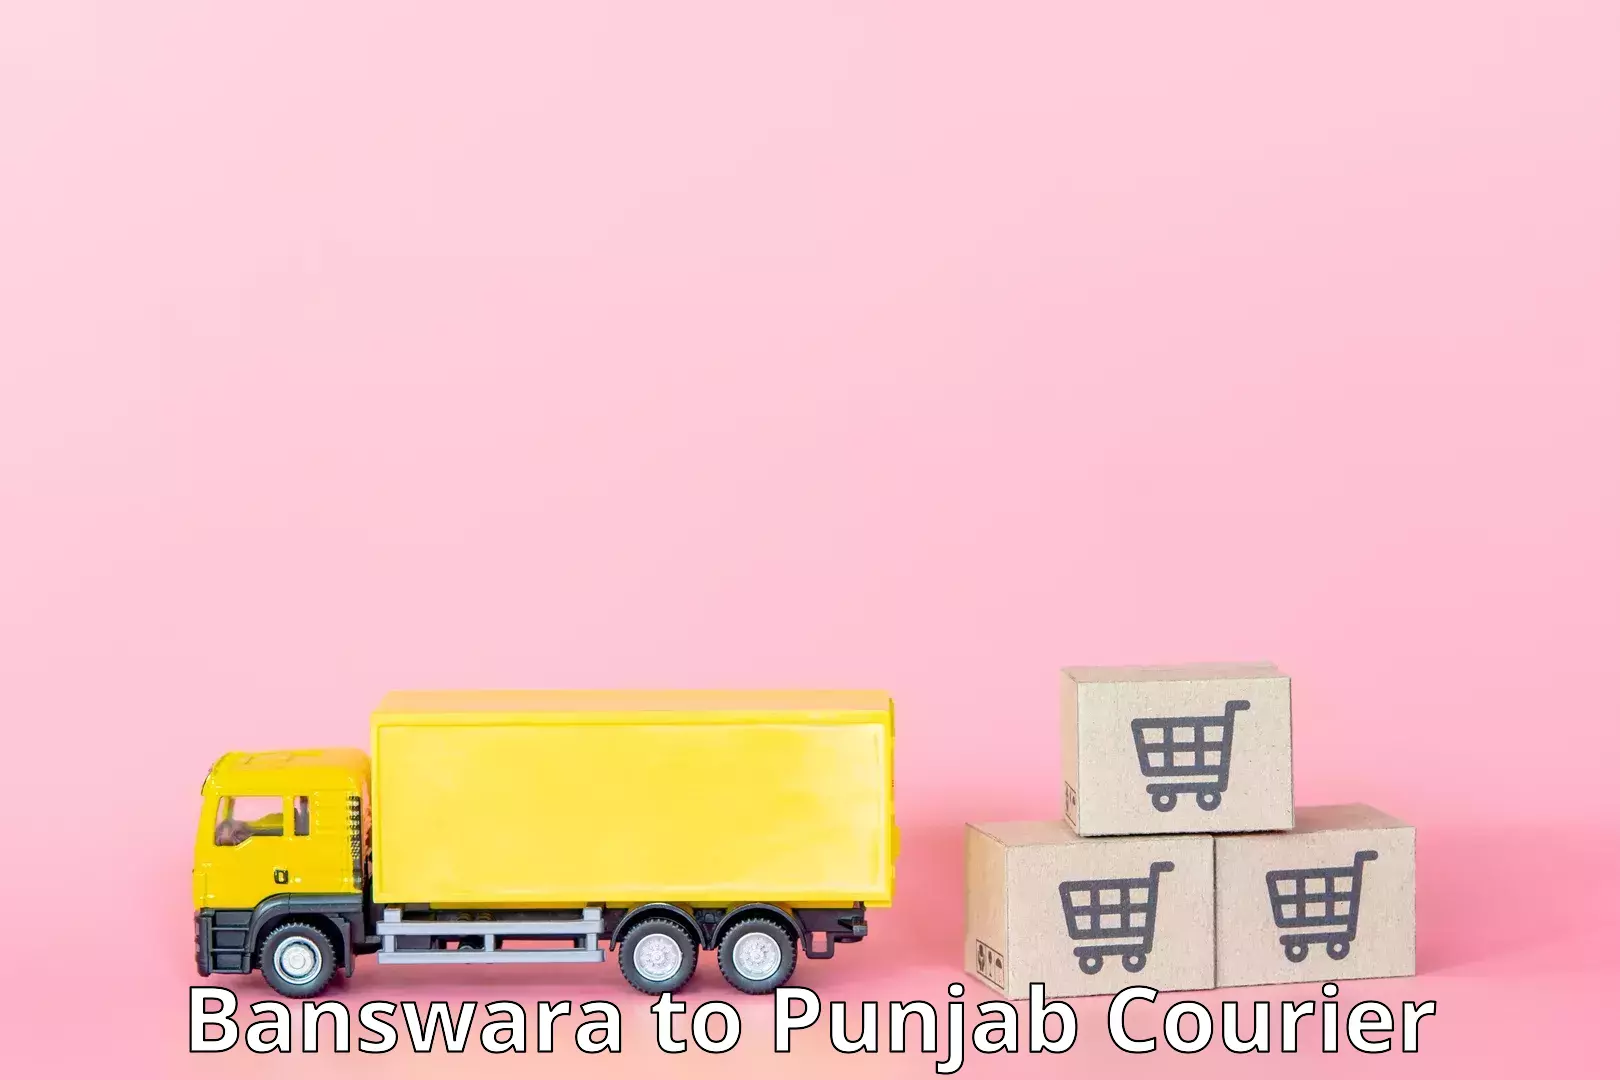 Fast delivery service Banswara to Barnala